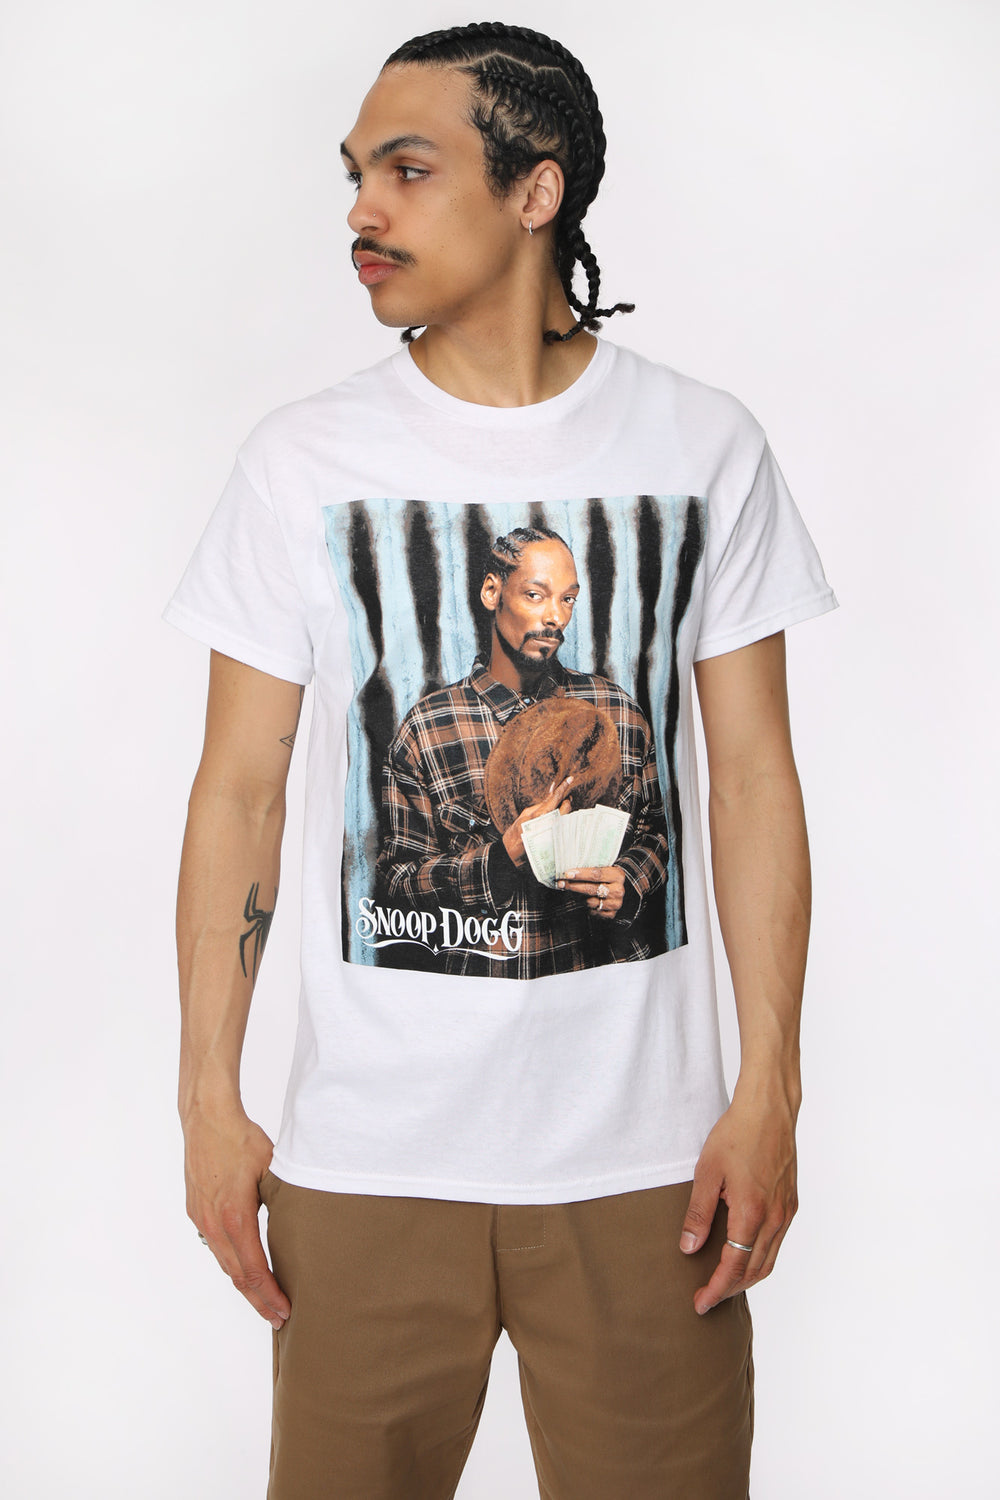 T-Shirt Imprimé Snoop Dogg Homme T-Shirt Imprimé Snoop Dogg Homme